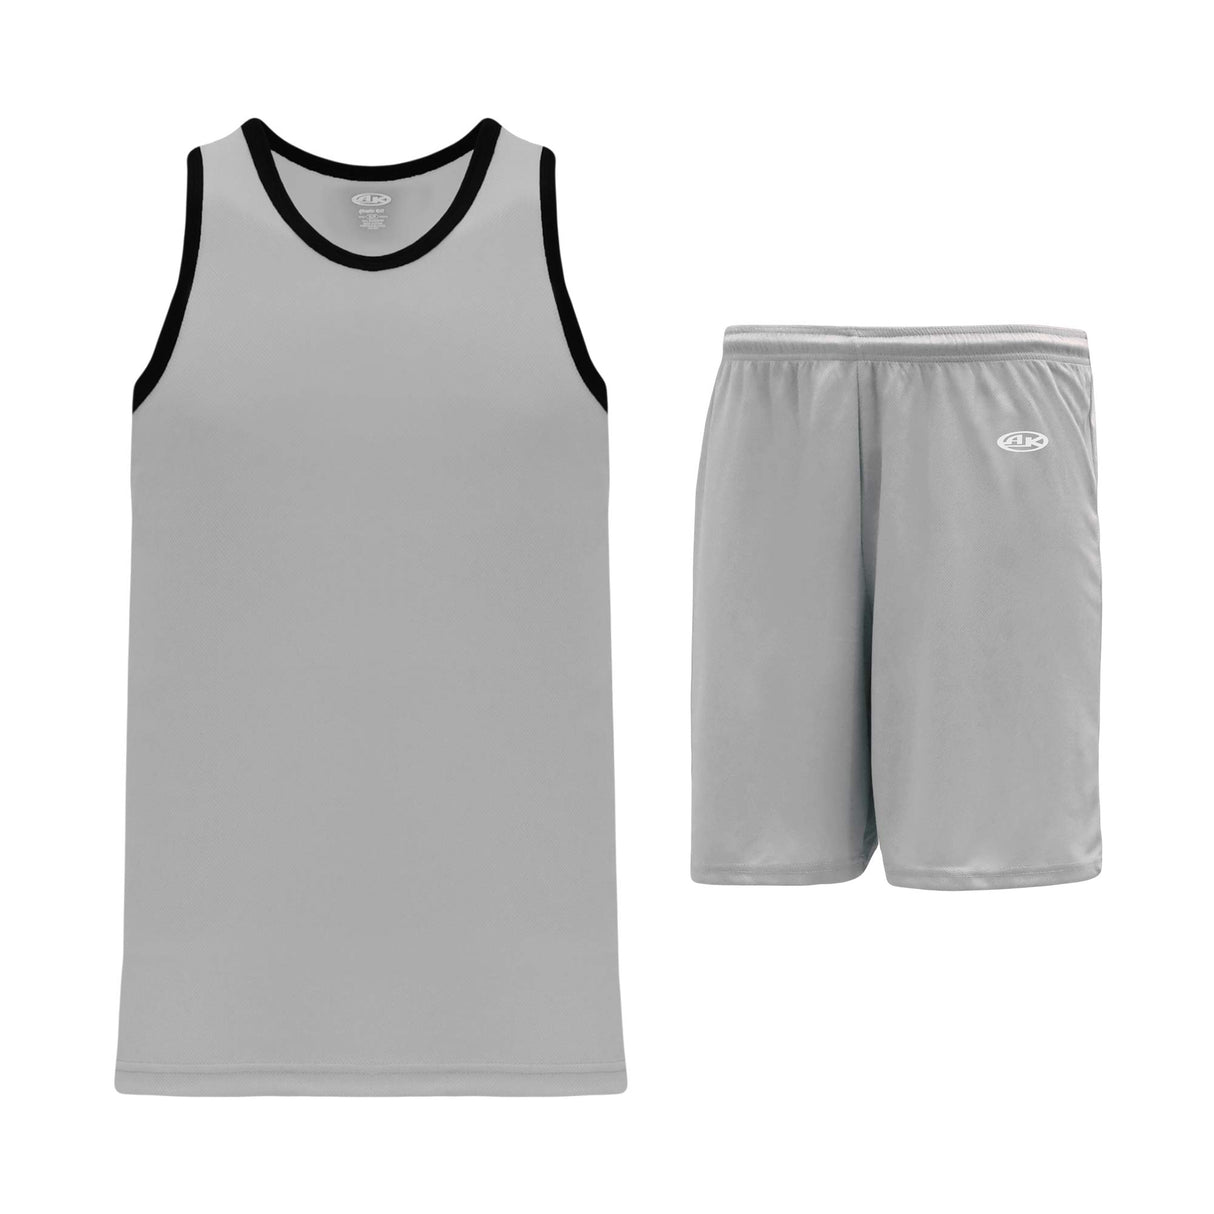 Athletic Knit B1325 ensemble basket camisole short gris